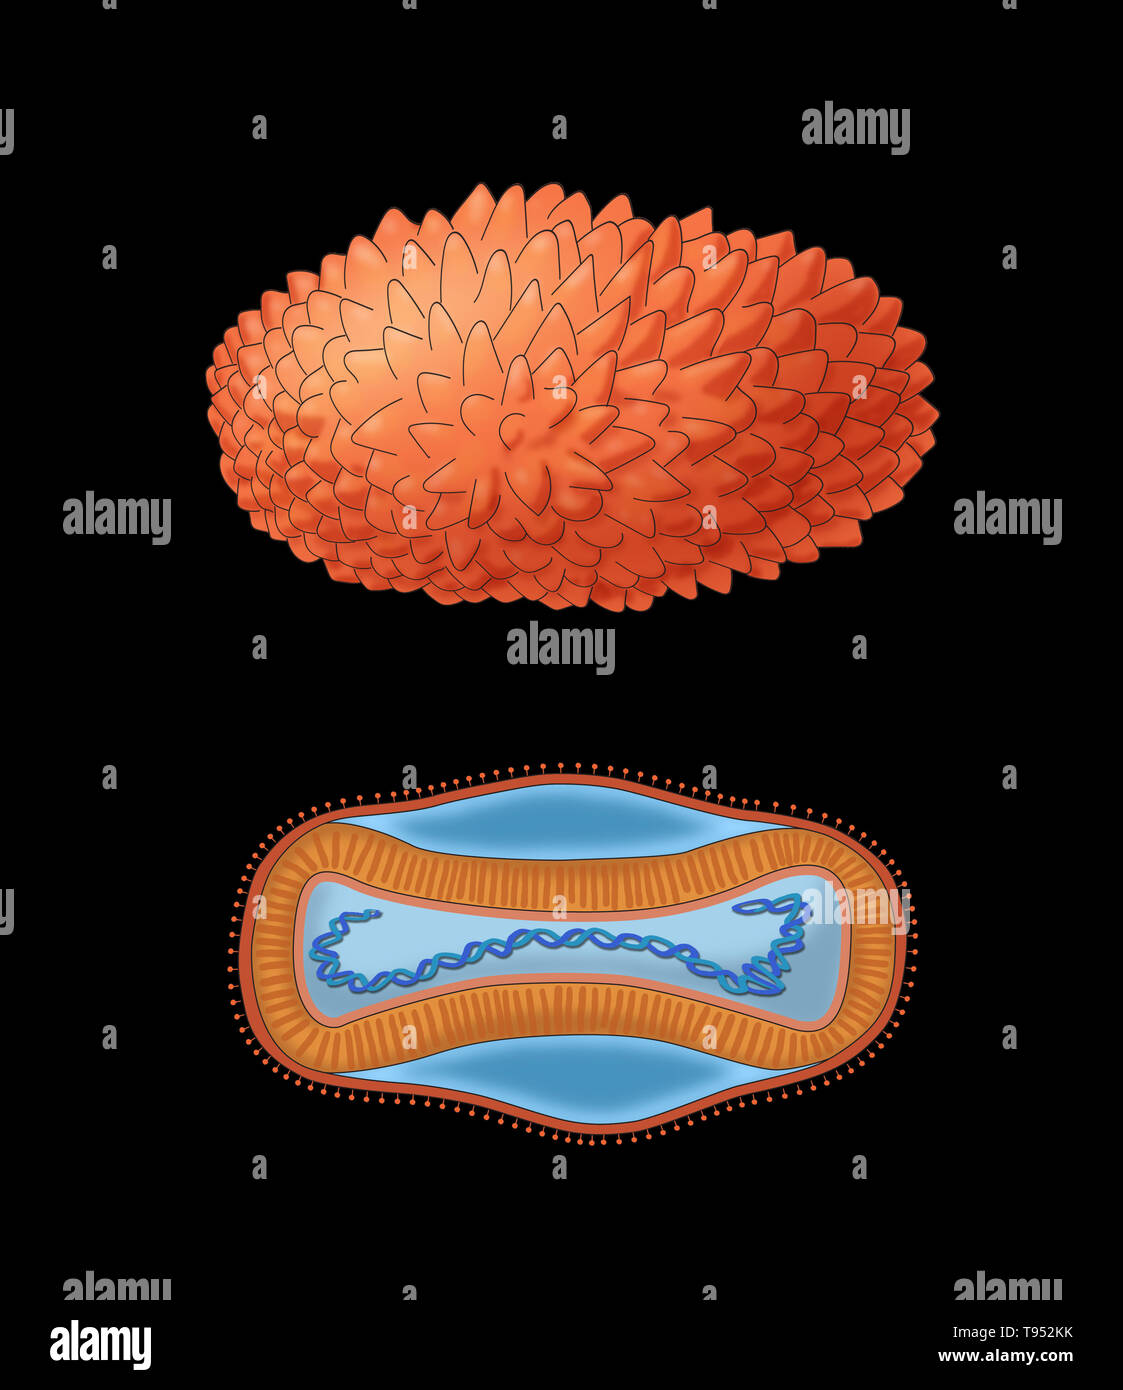 Ilustración del virus de la viruela, mostrando una vista externa (superior) y la estructura interna (parte inferior). Foto de stock